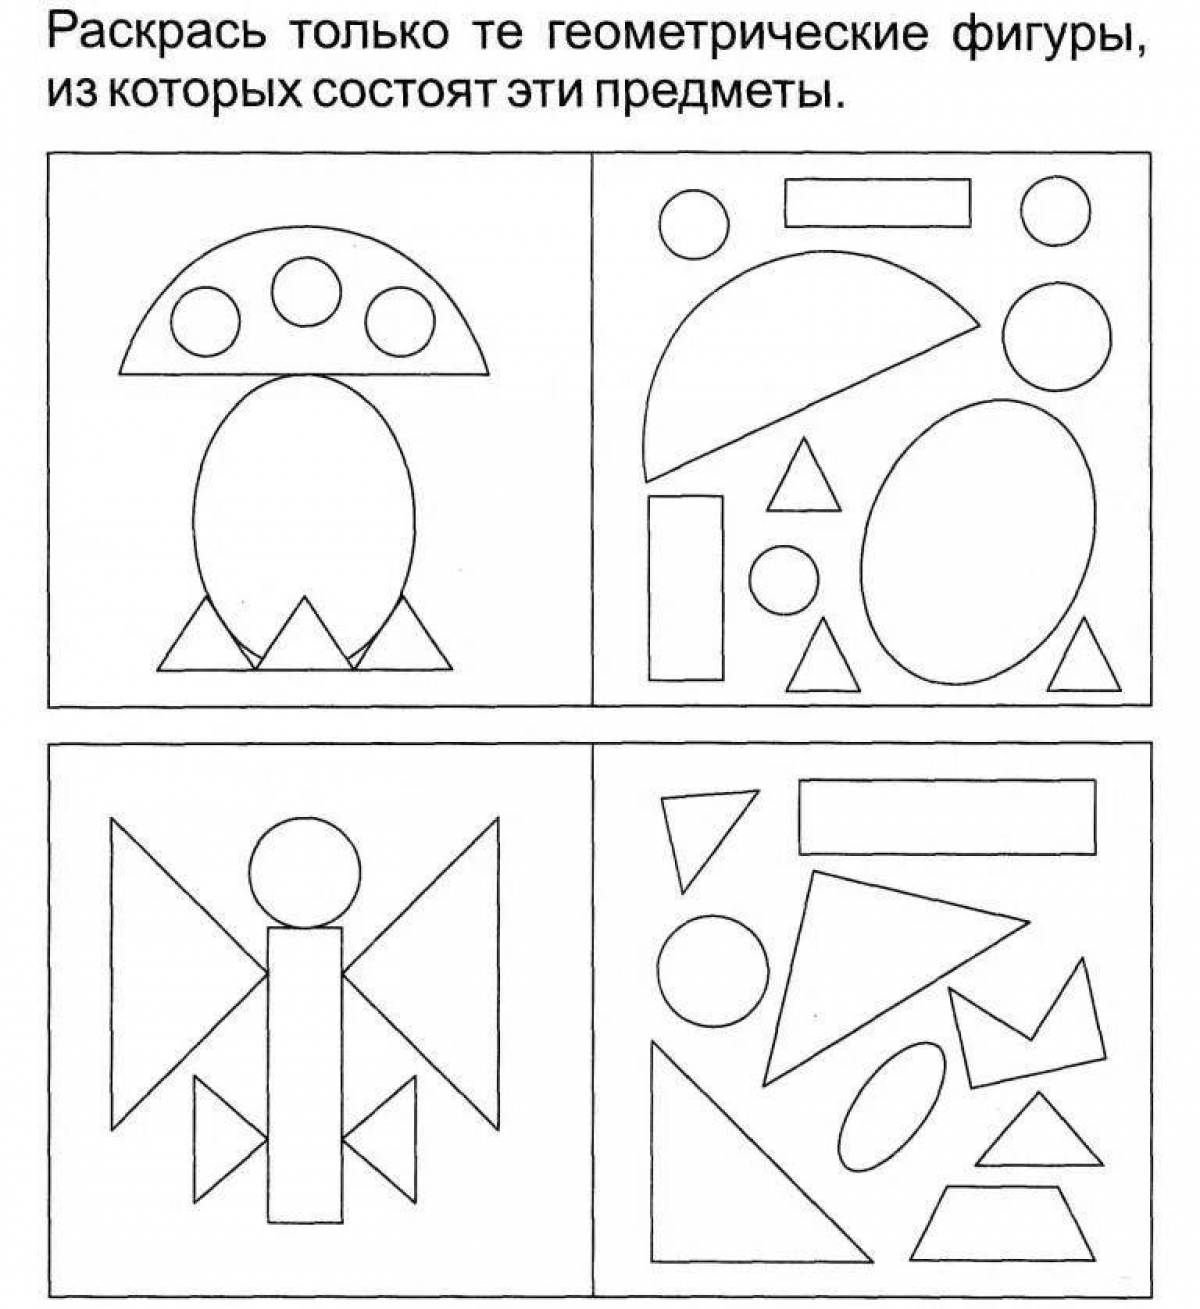 Задания для дошкольников геометрические фигуры 5-6 лет